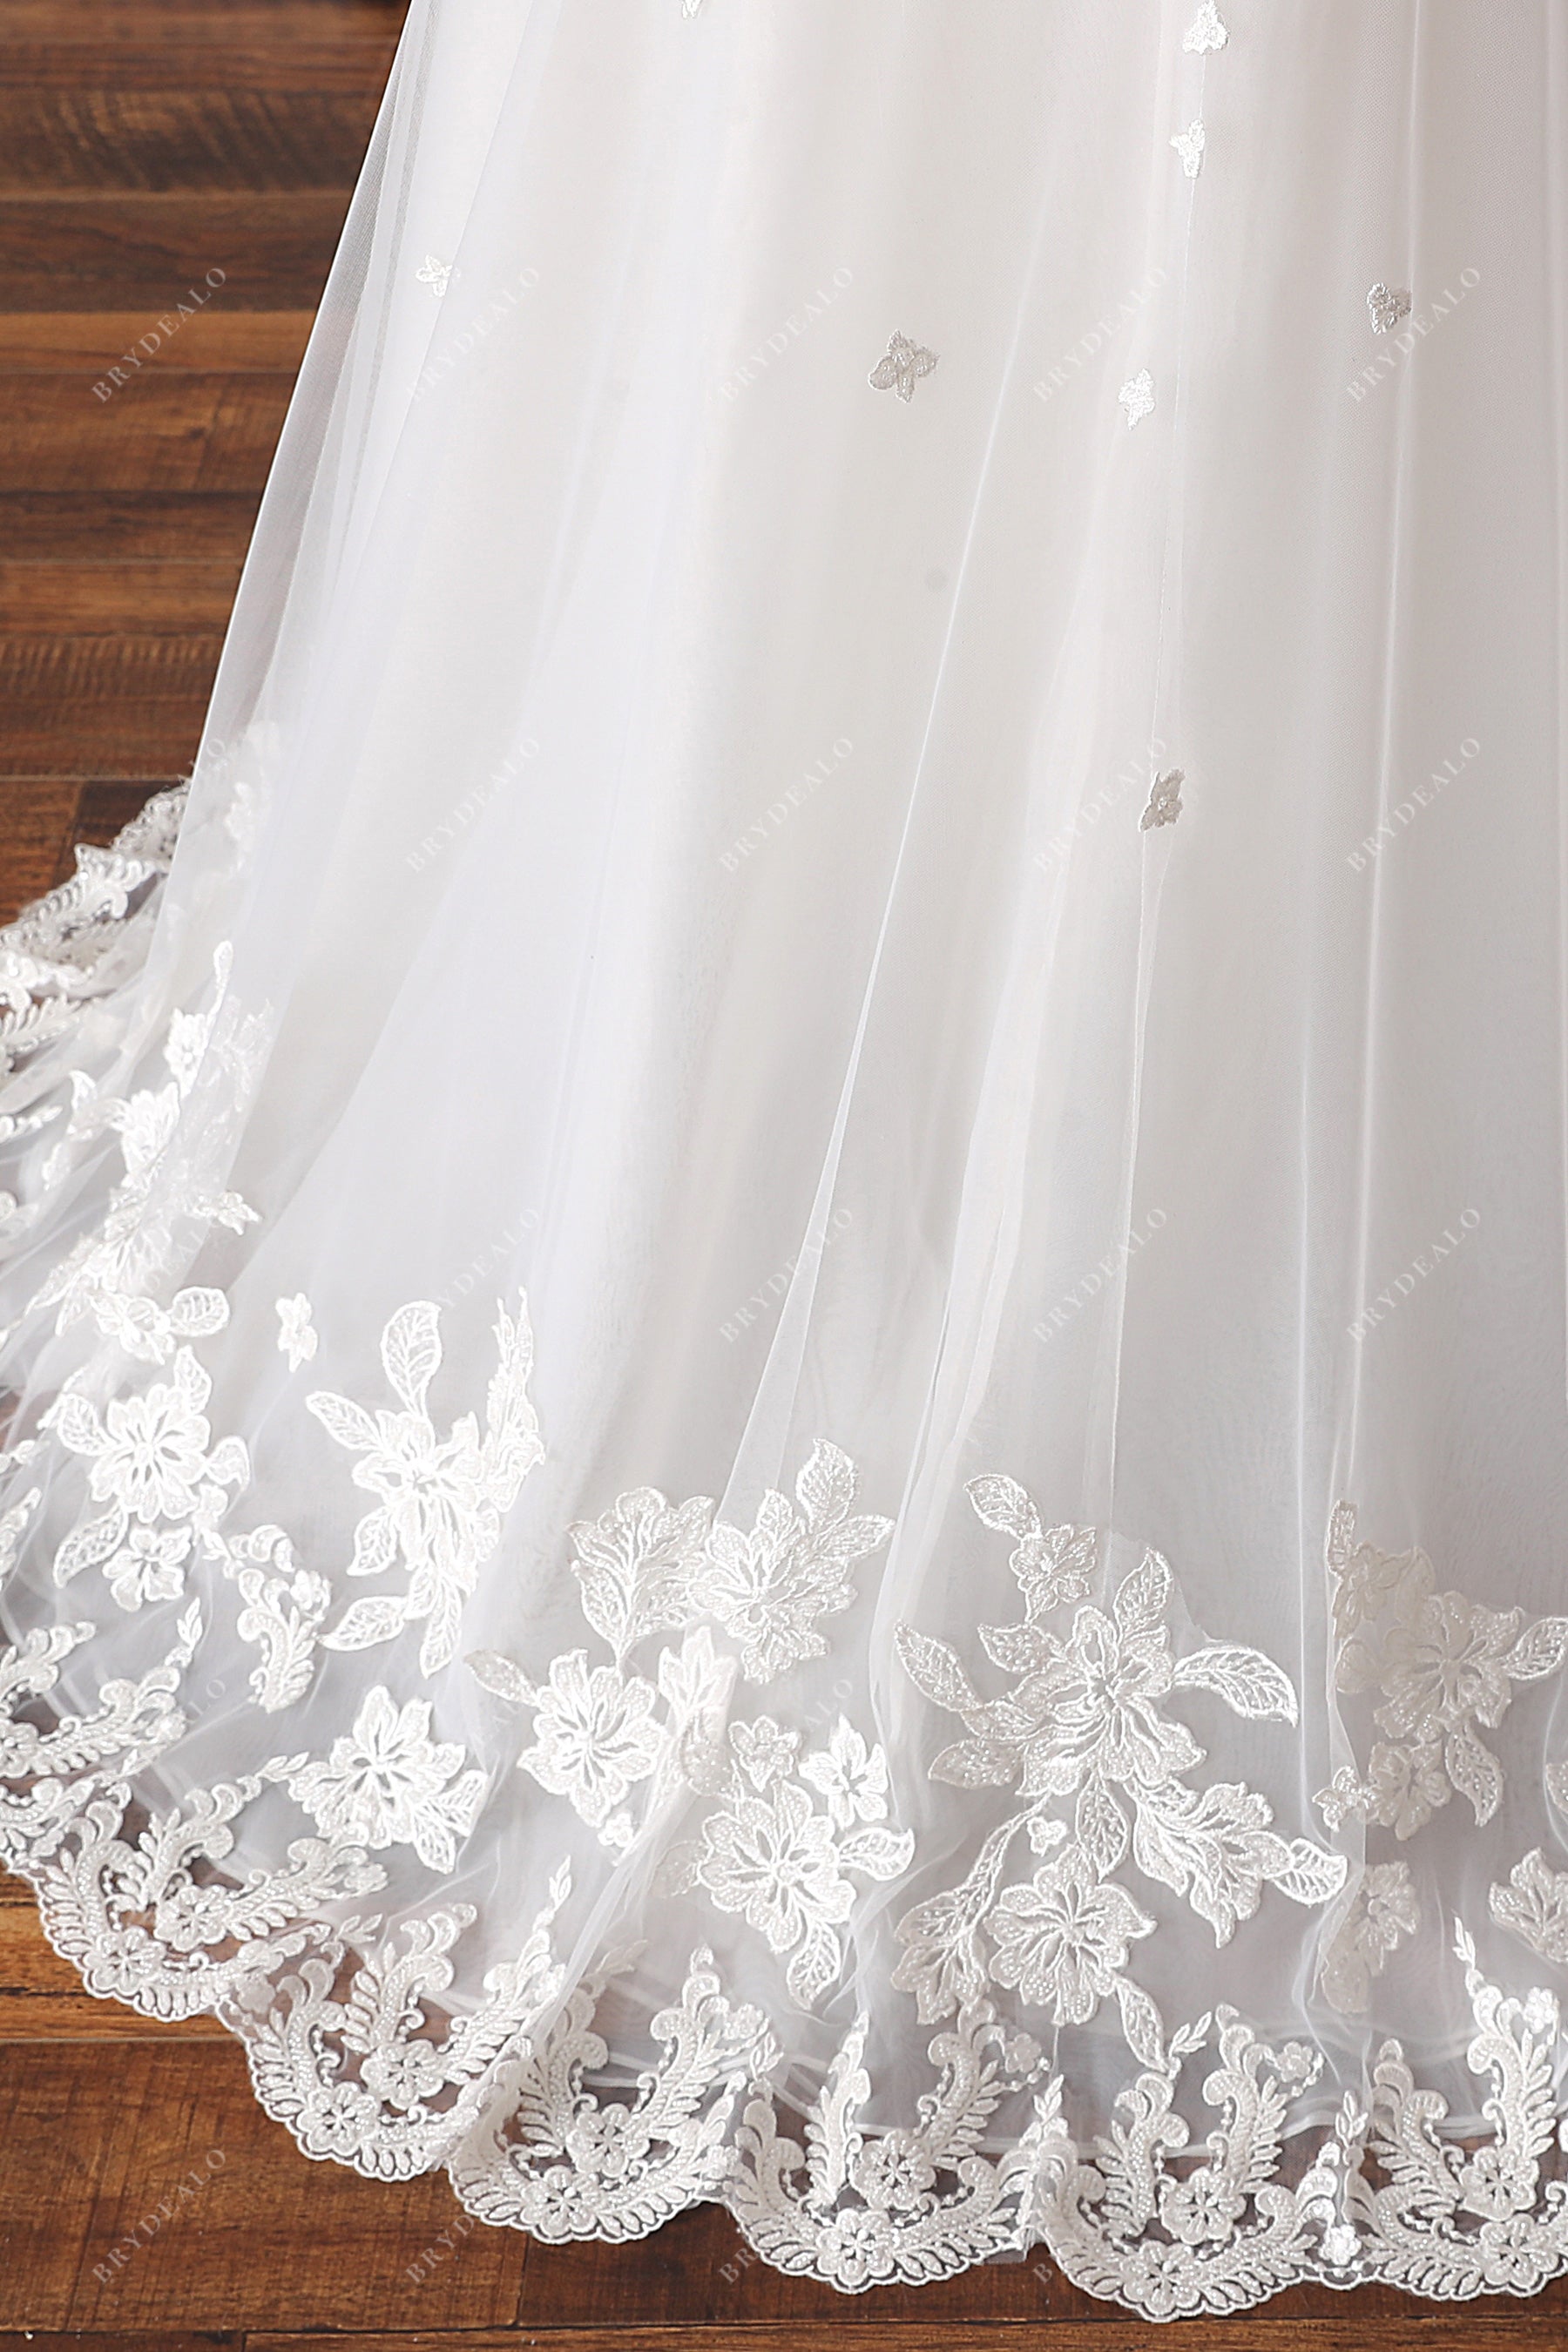 floral lace overskirt elegant wedding dress